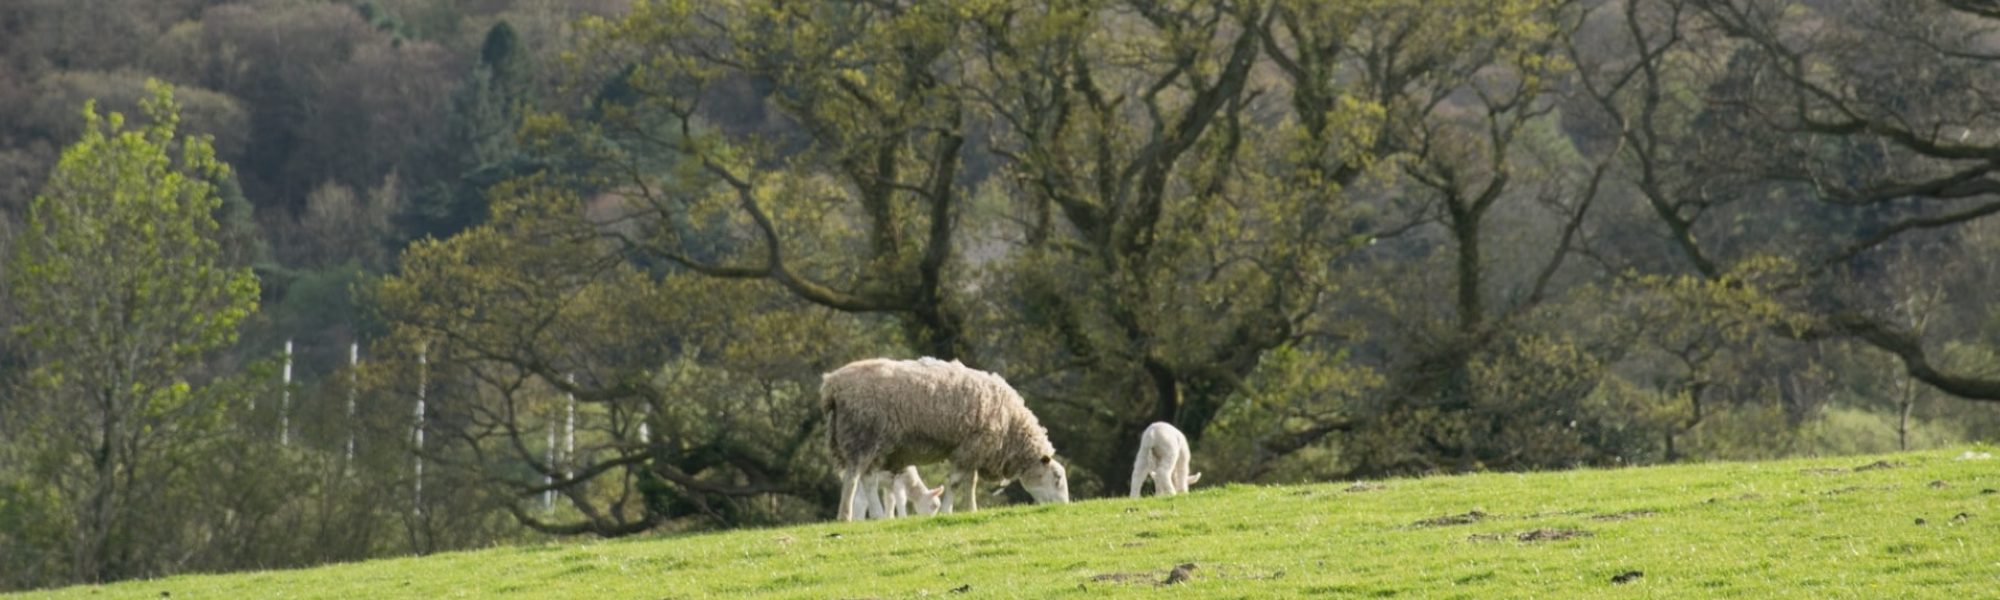 Sheep and lambs eating grass